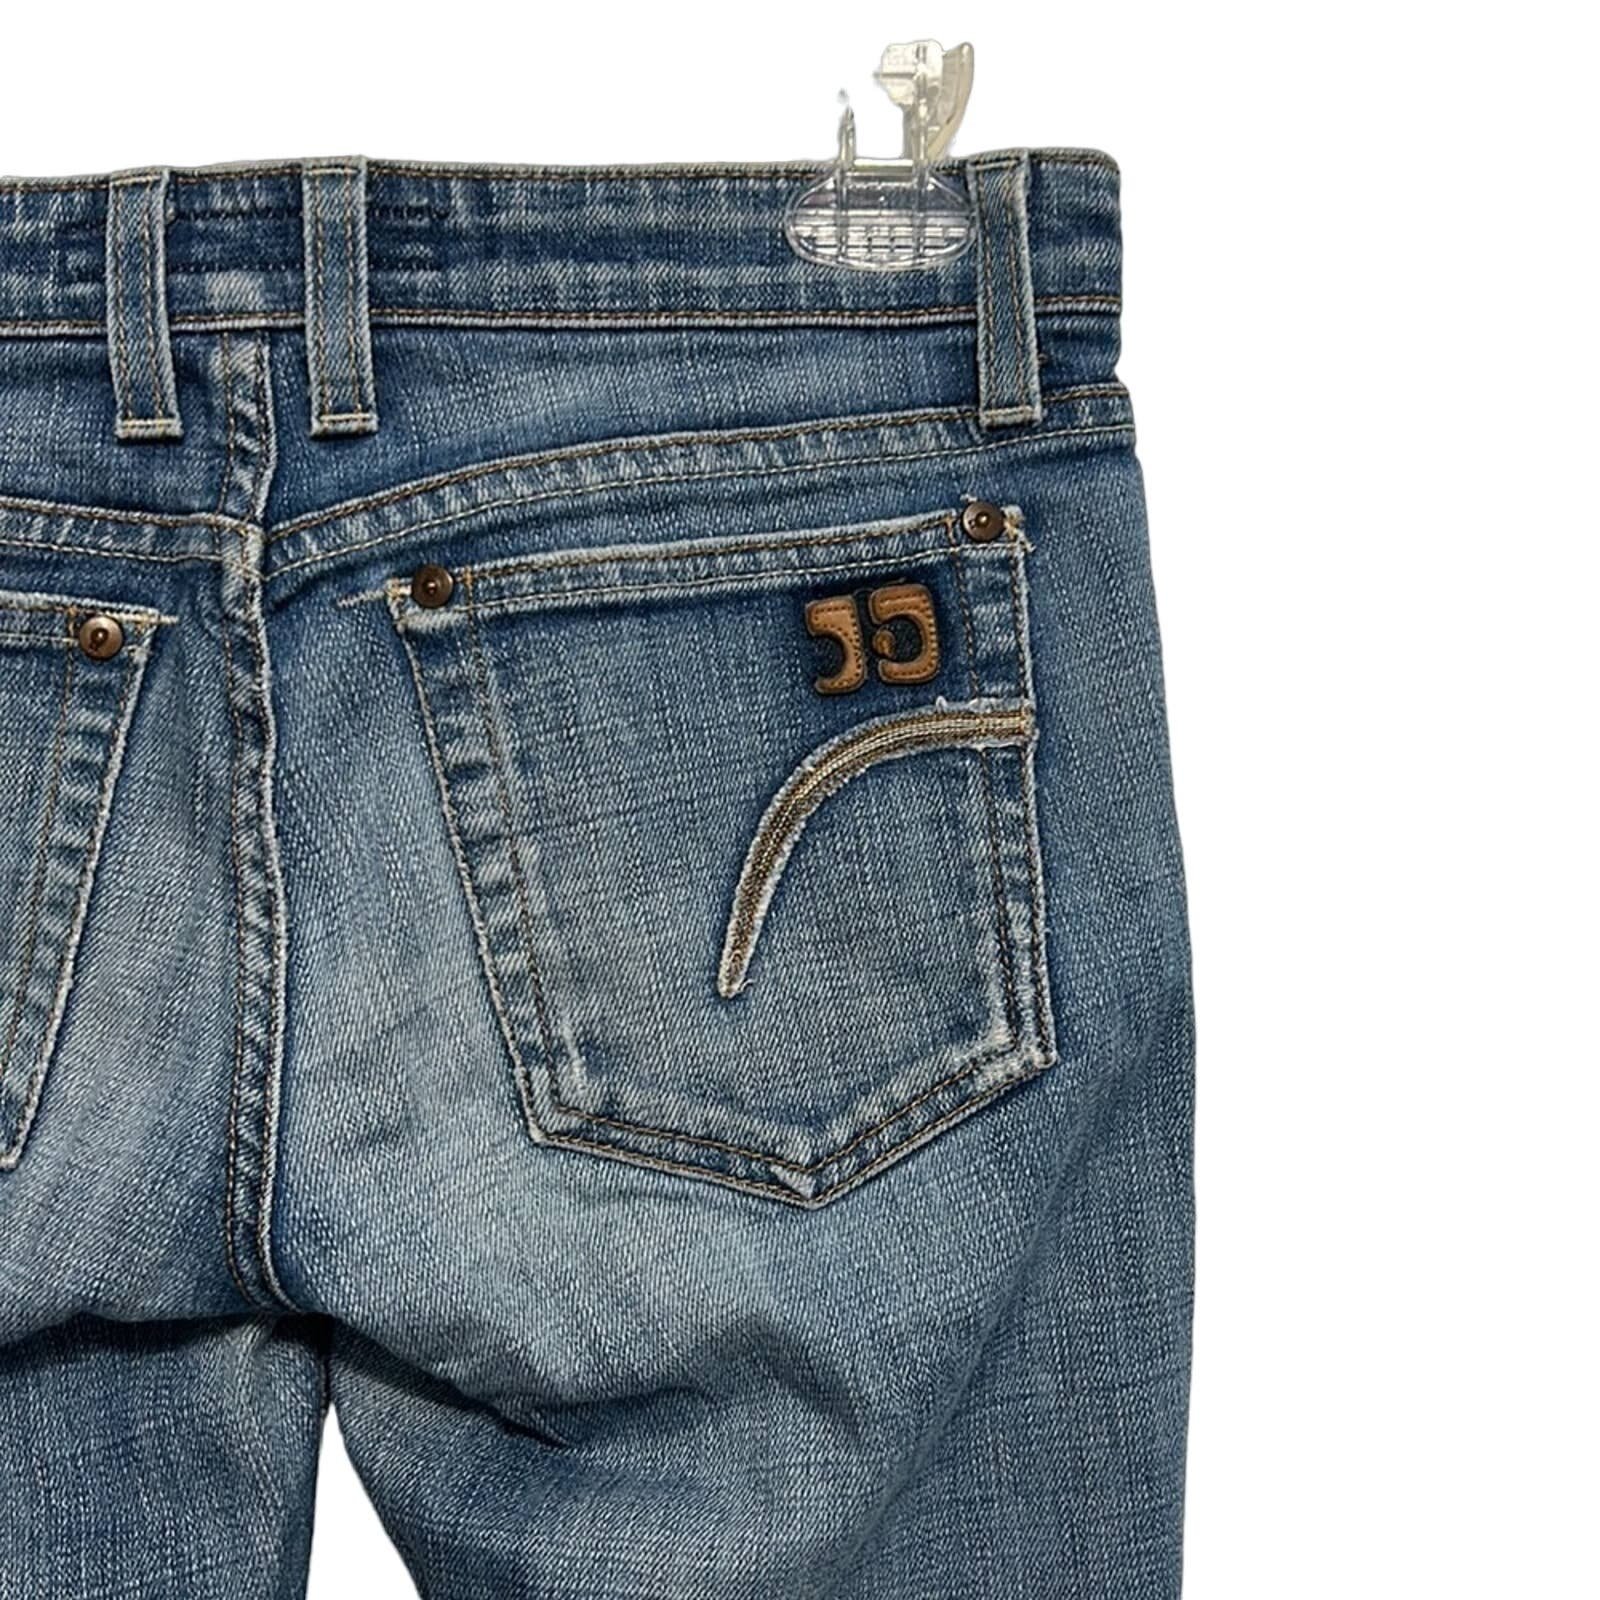 Promotions  Joe’s Jeans Womens cropped jeans women´s size 26 fi6zFd4La New Style